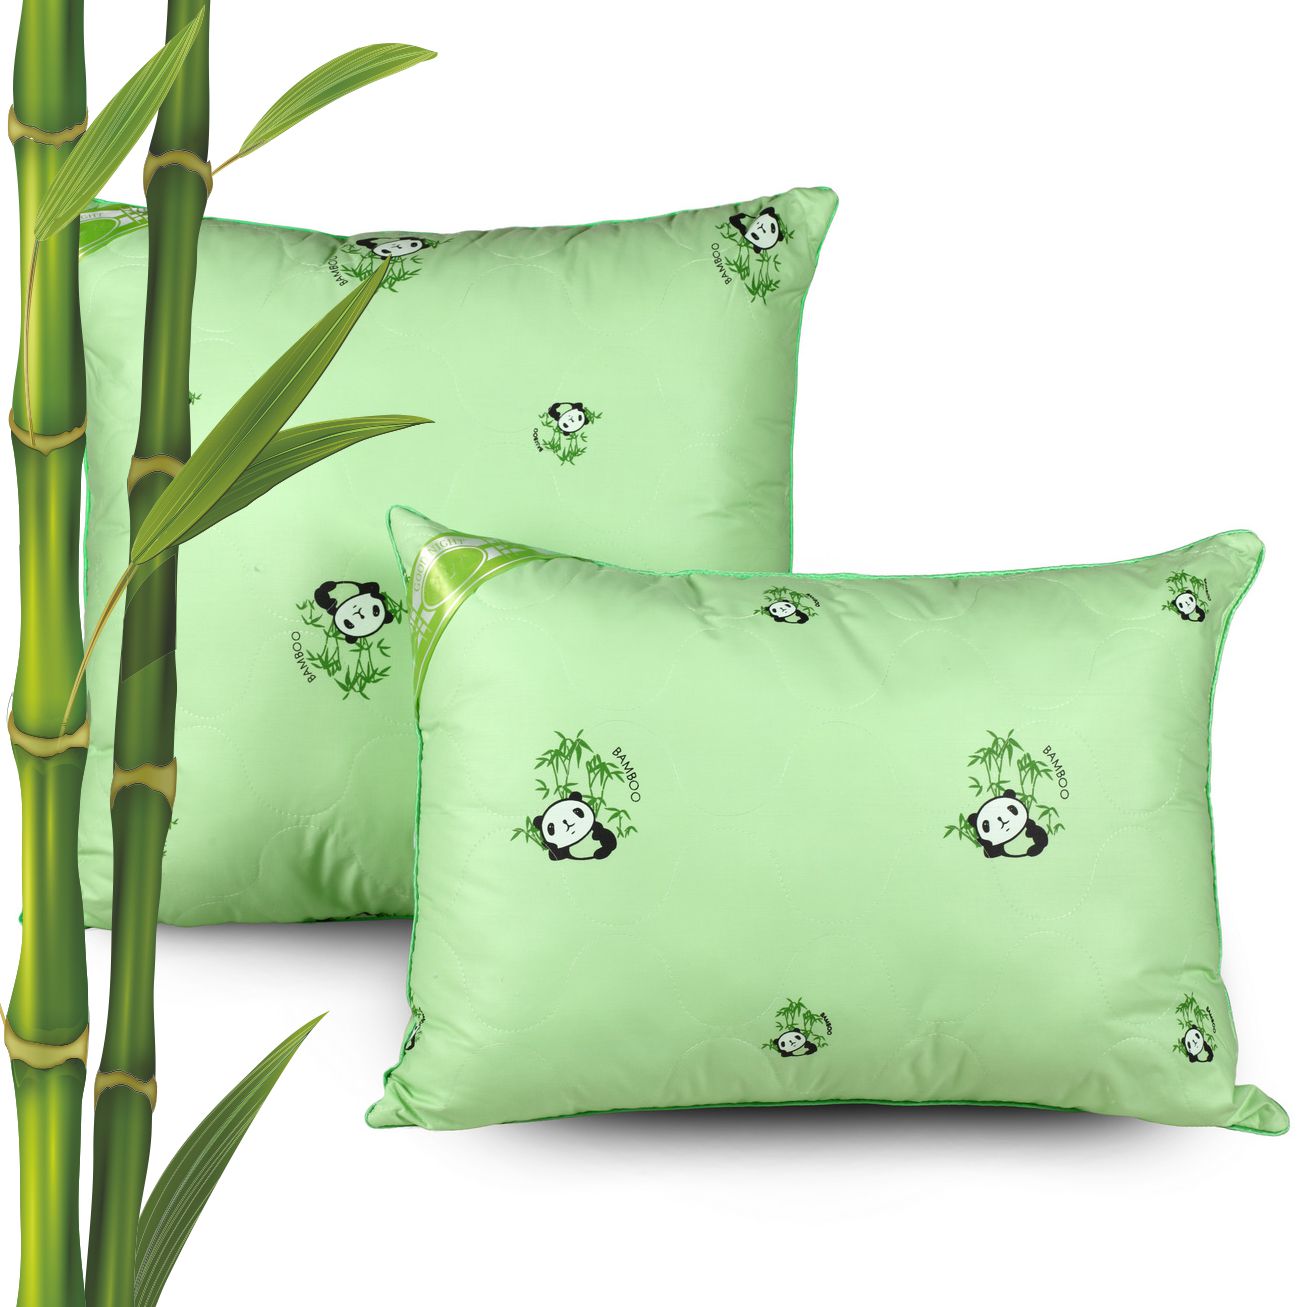 Купить подушки из бамбука недорого в Москве в интернет-магазине GreenSatin